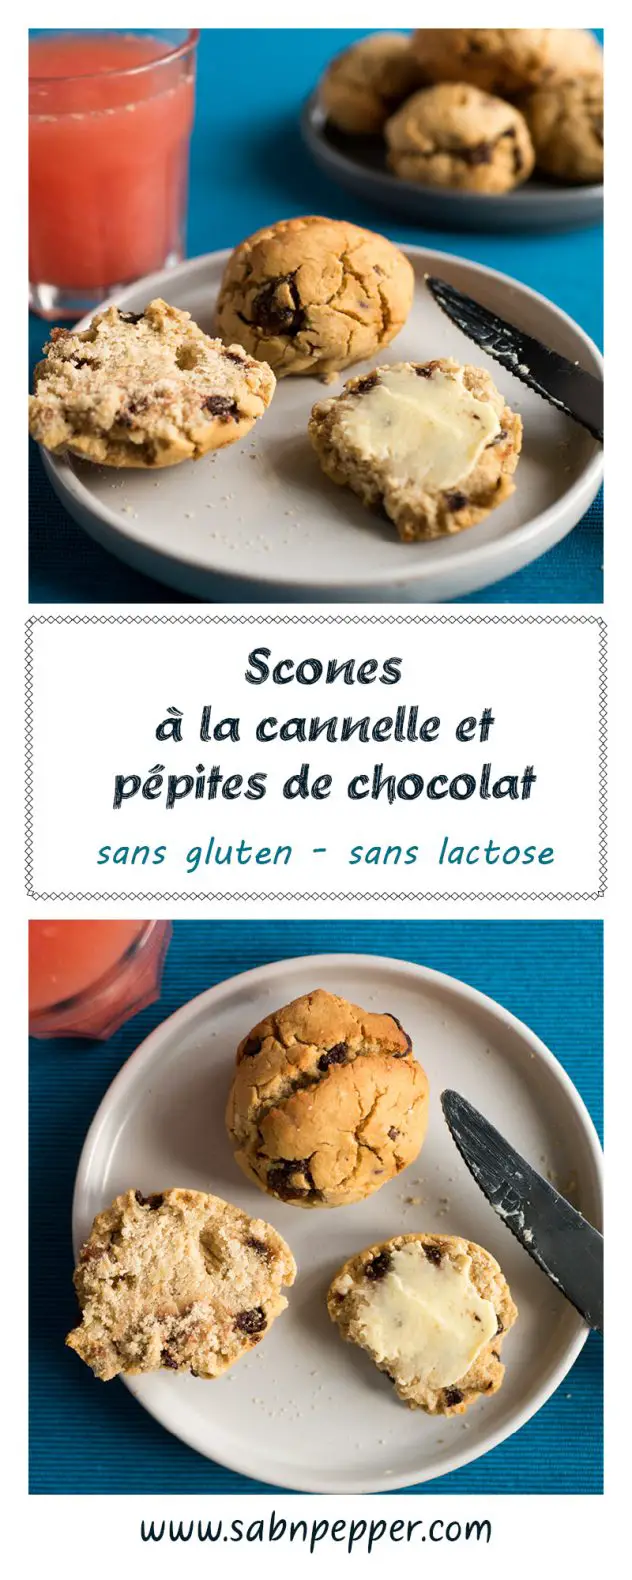 Scones sans gluten #scones #recette #farinederiz #recettefacile